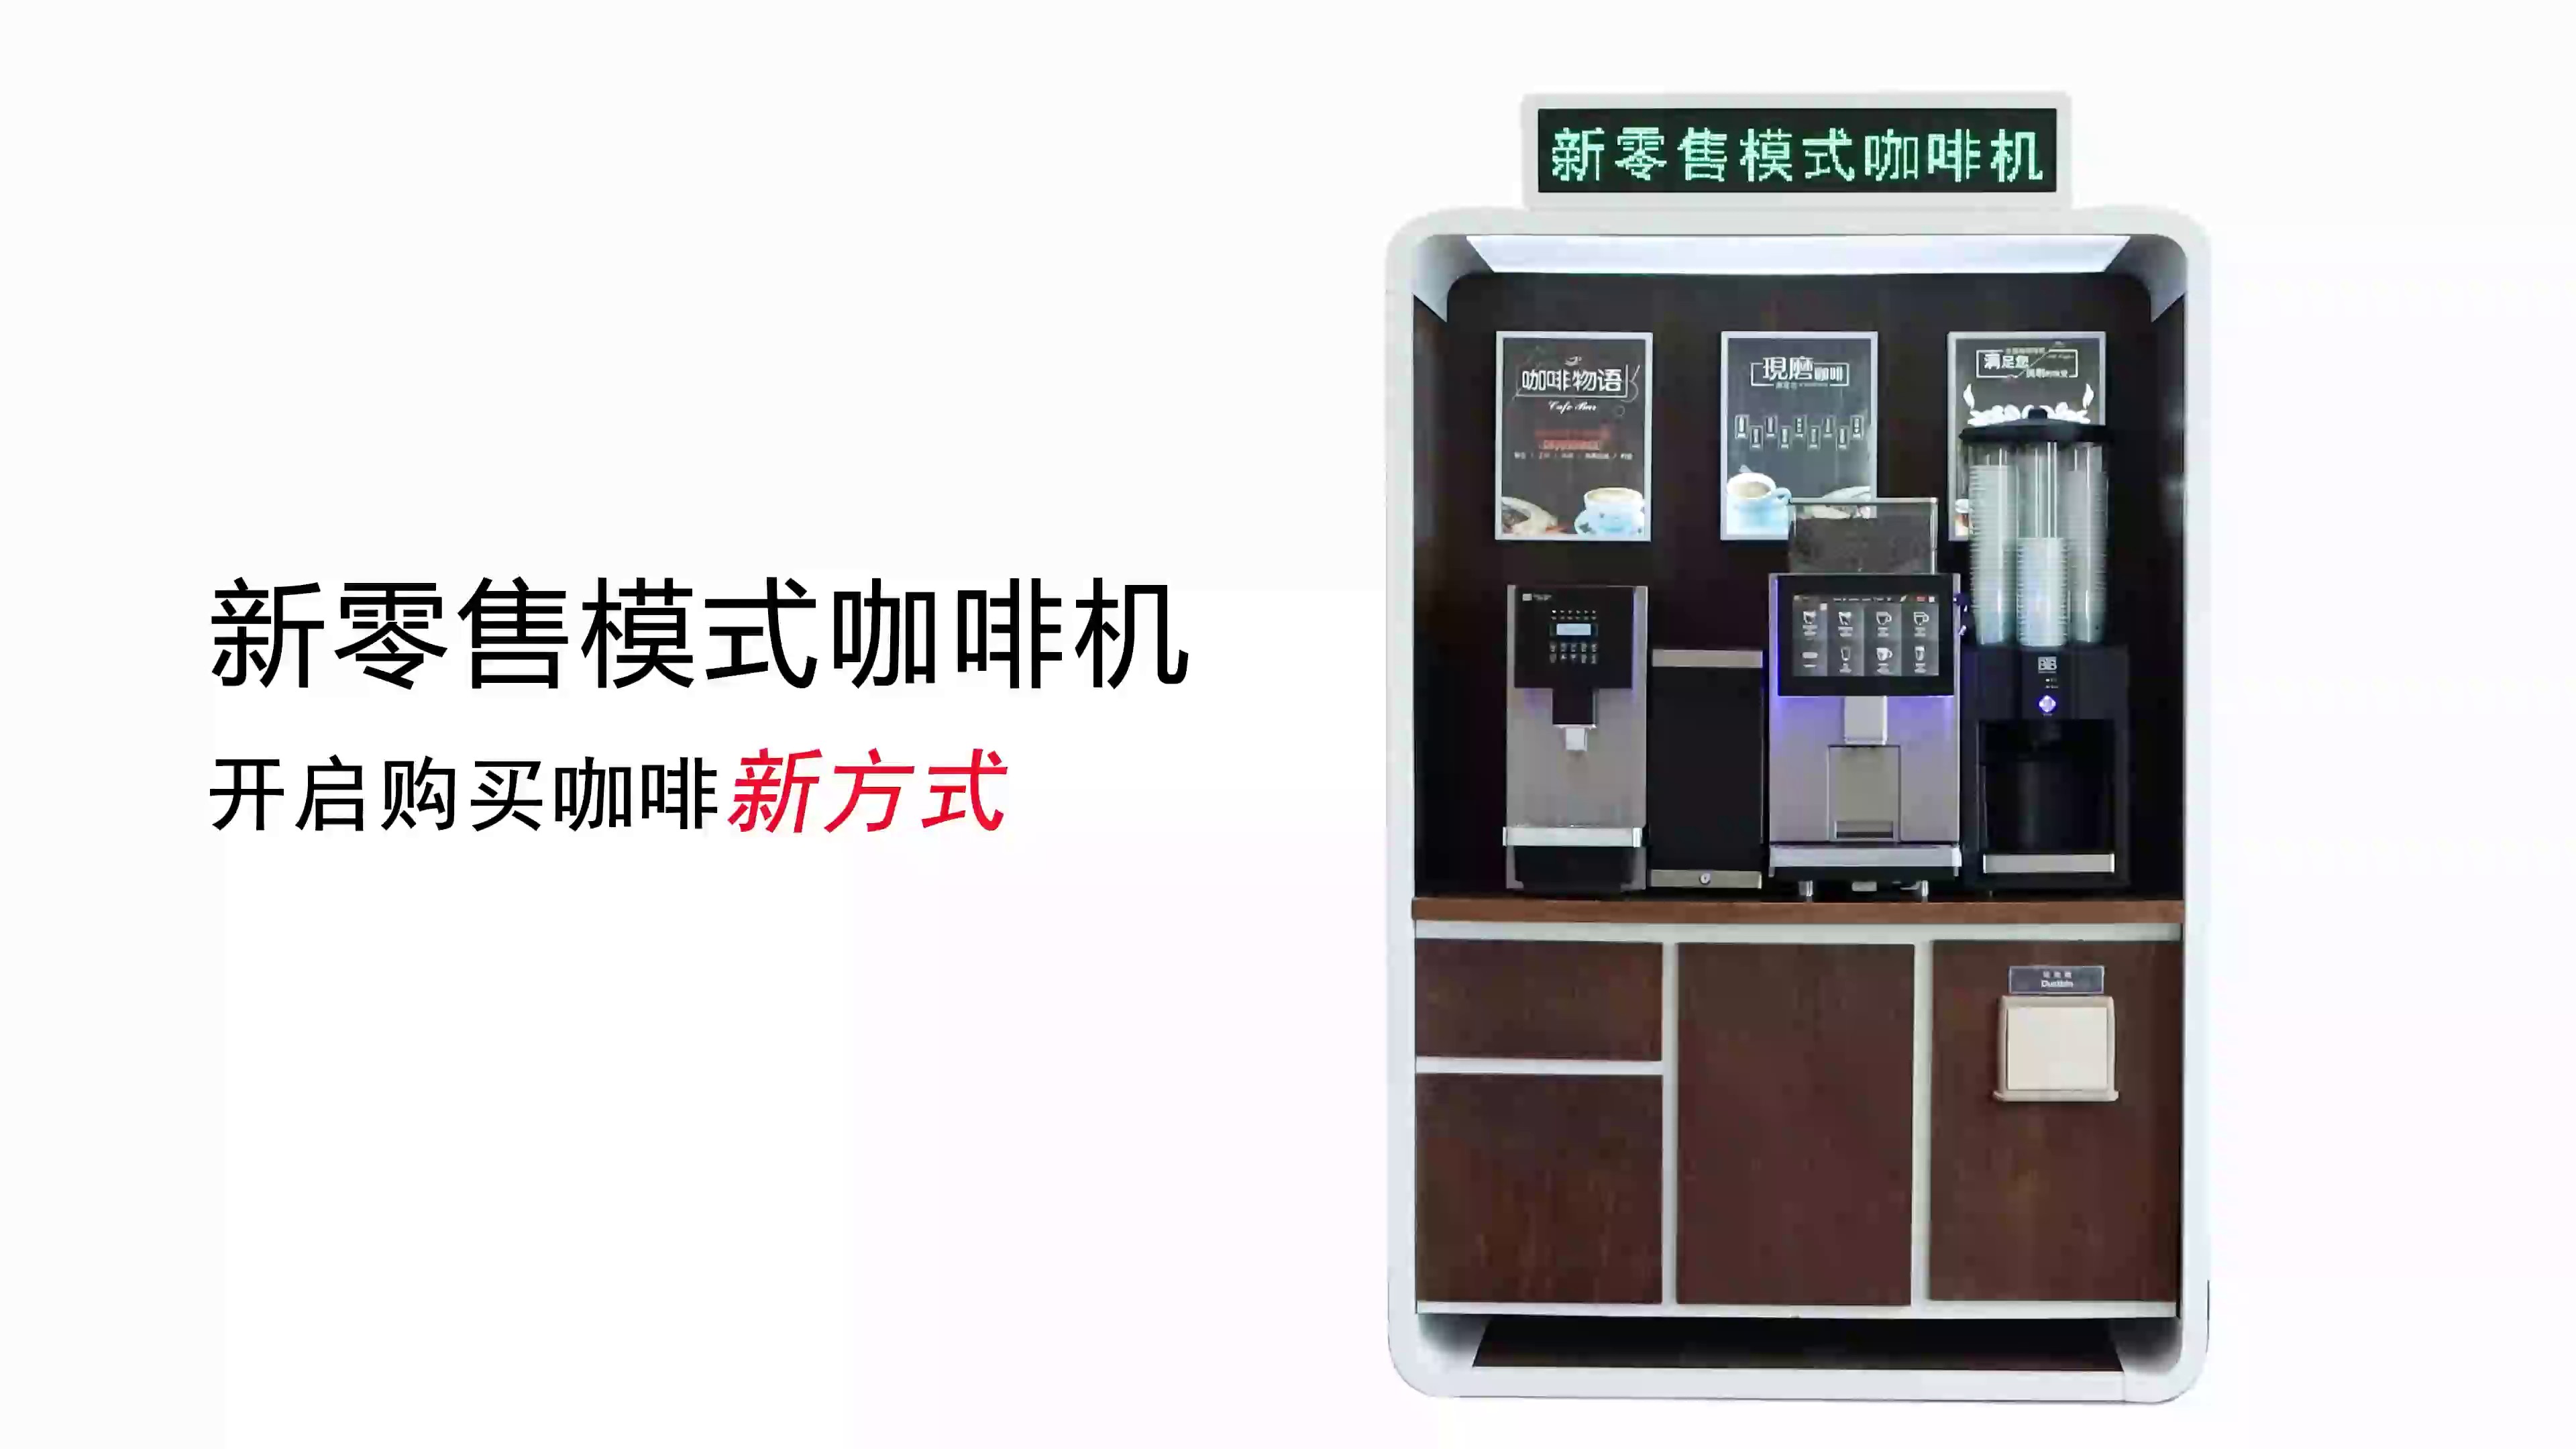 宁波新零售咖啡机采购,咖啡机